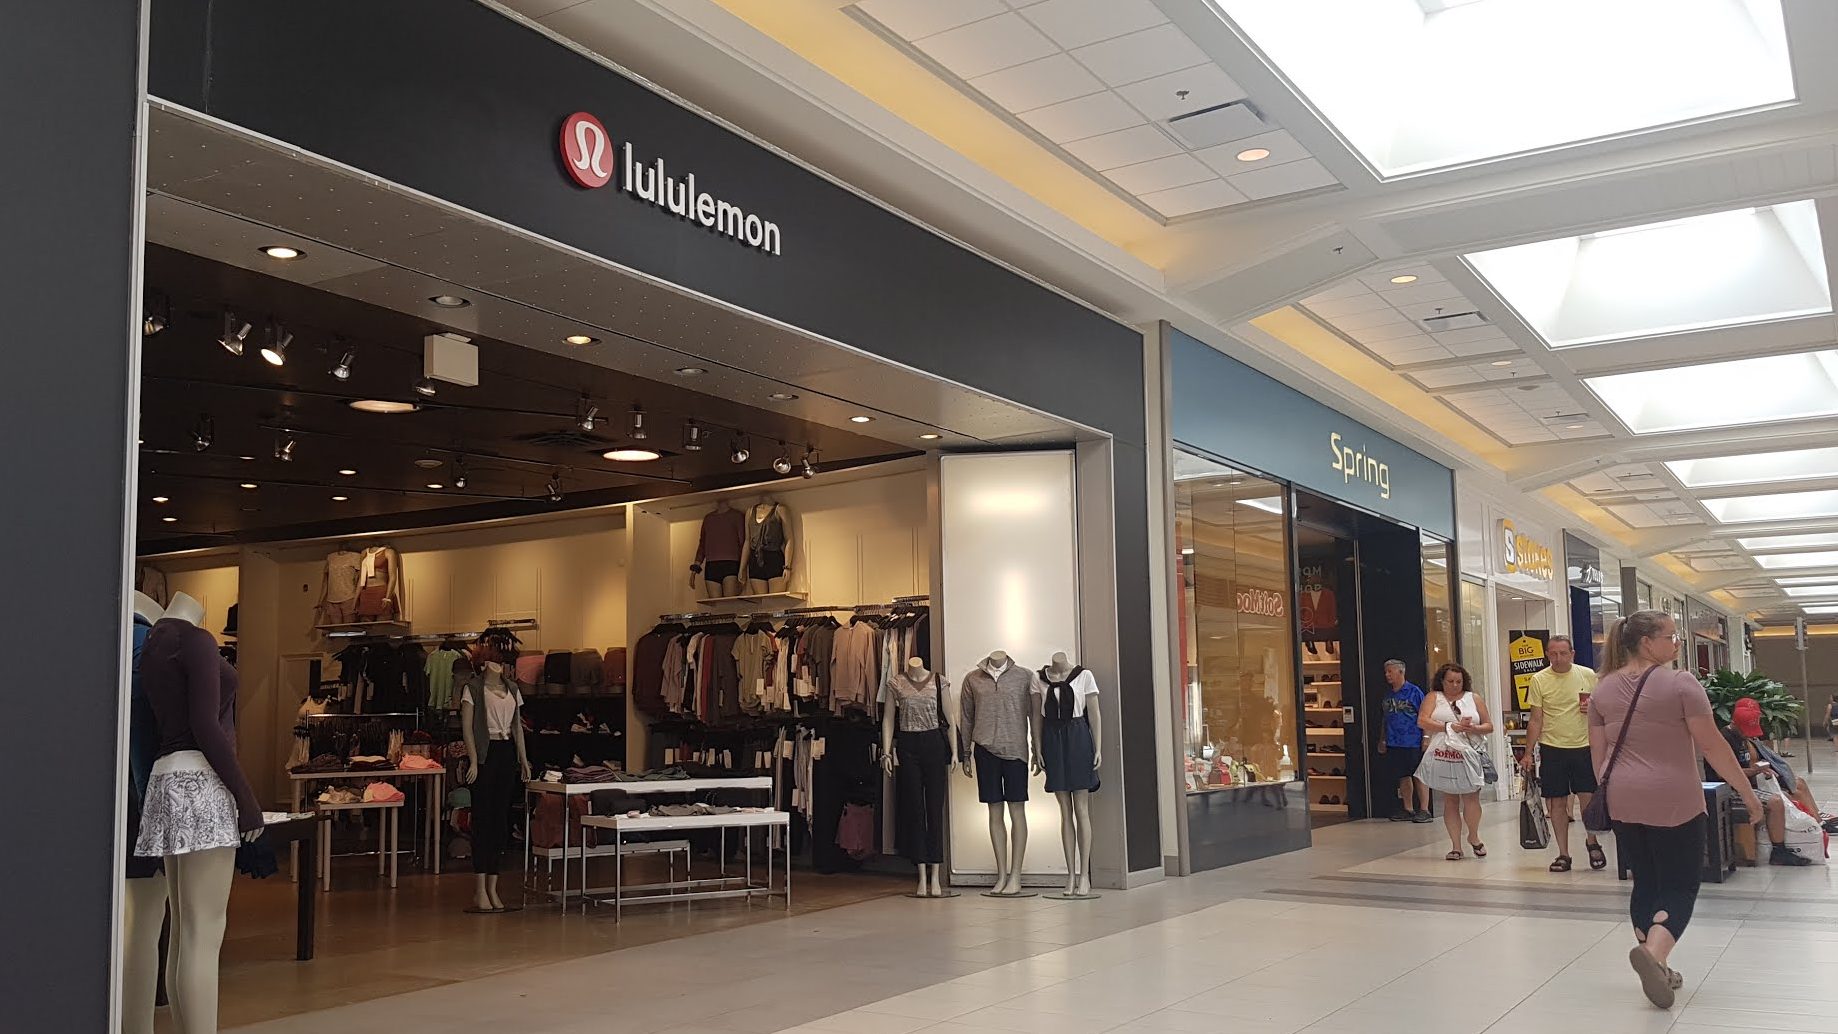 fashion place lululemon